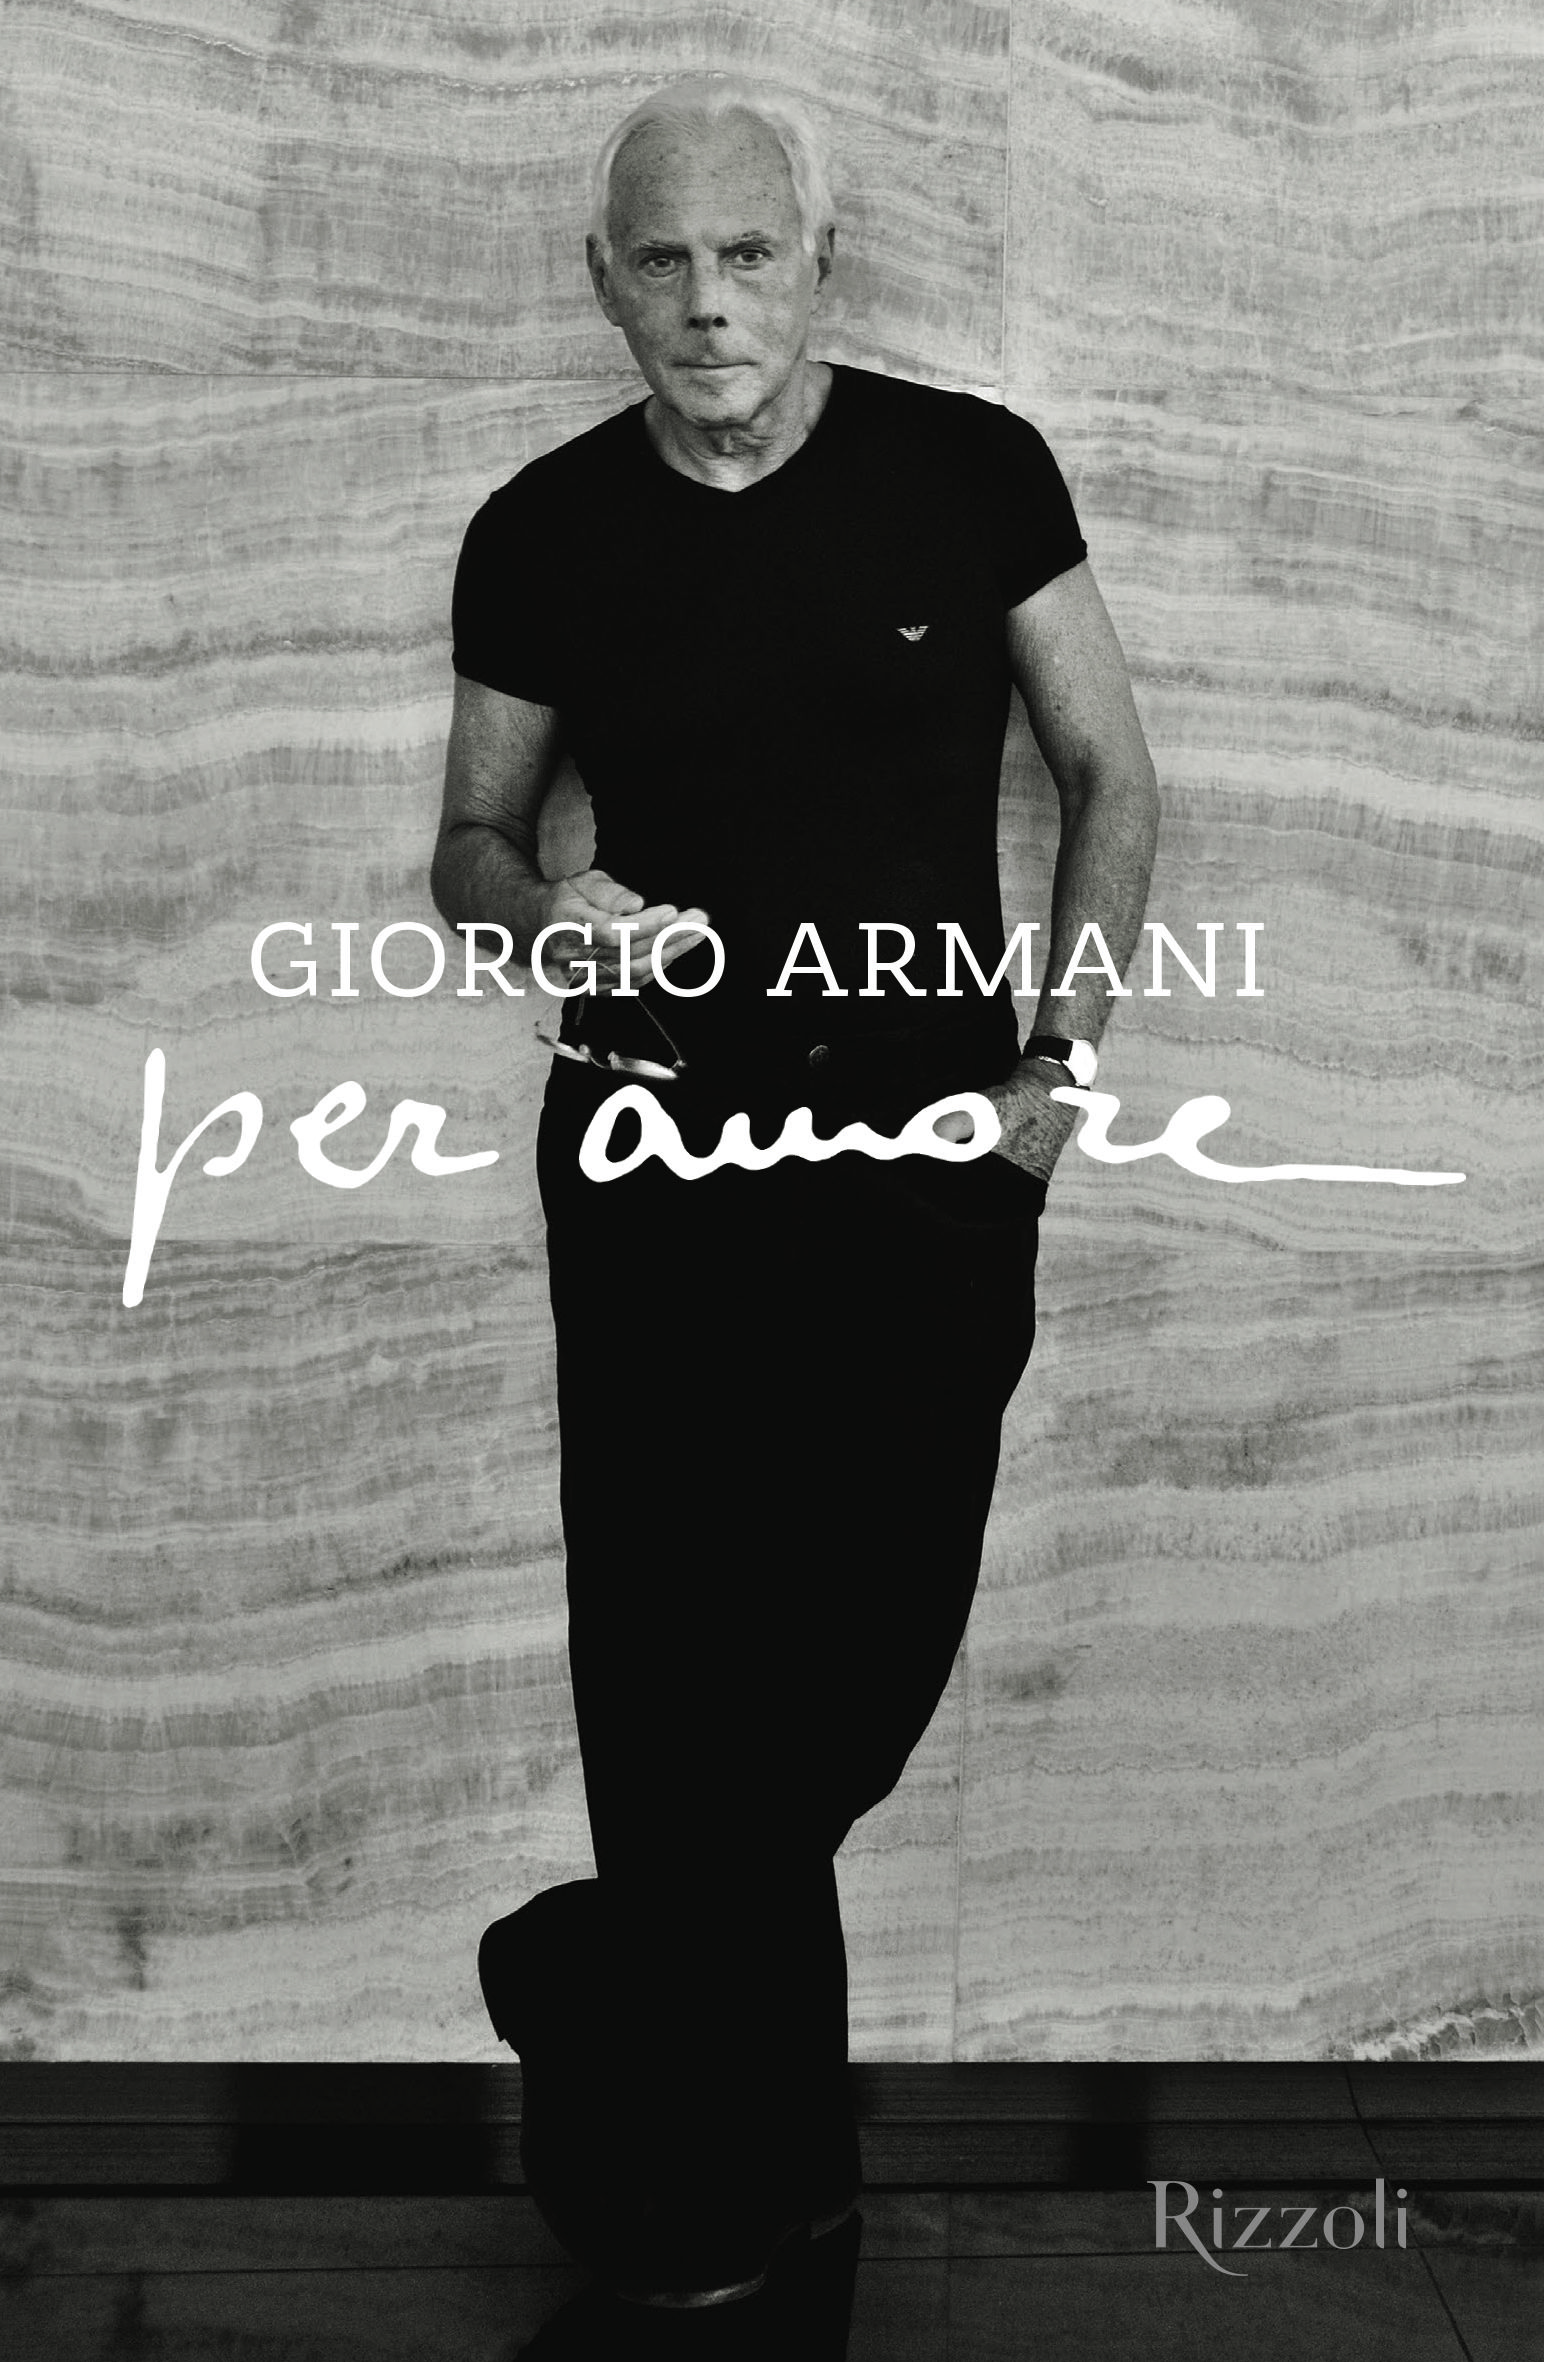 Design News: Giorgio Armani, passion for design